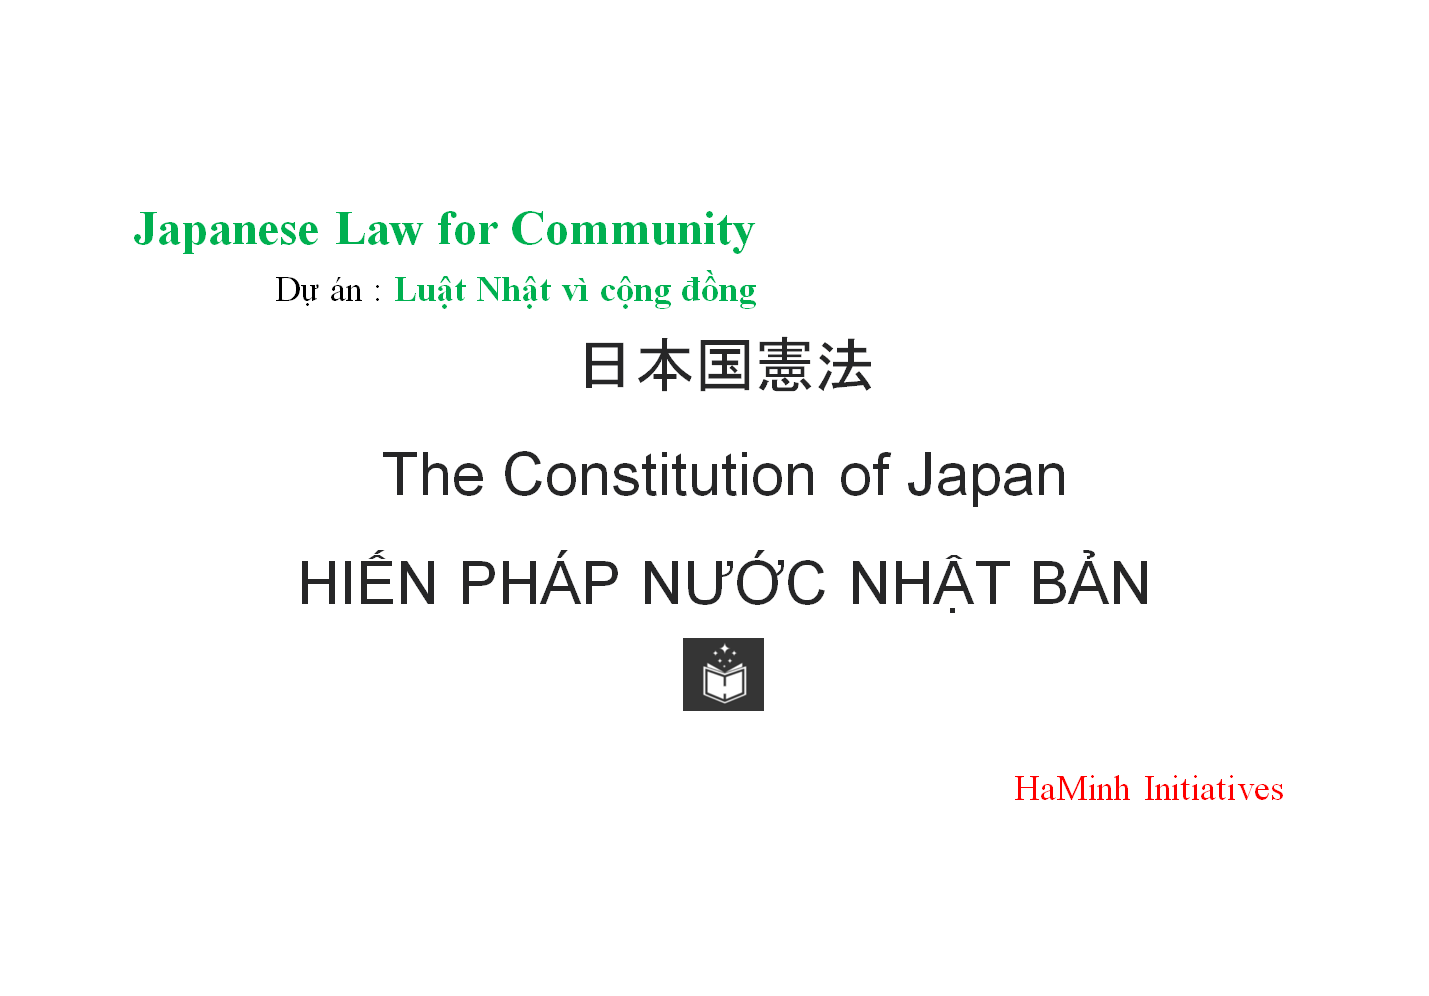 HIẾN PHÁP NƯỚC NHẬT BẢN
The Constitution of Japan
日本国憲法